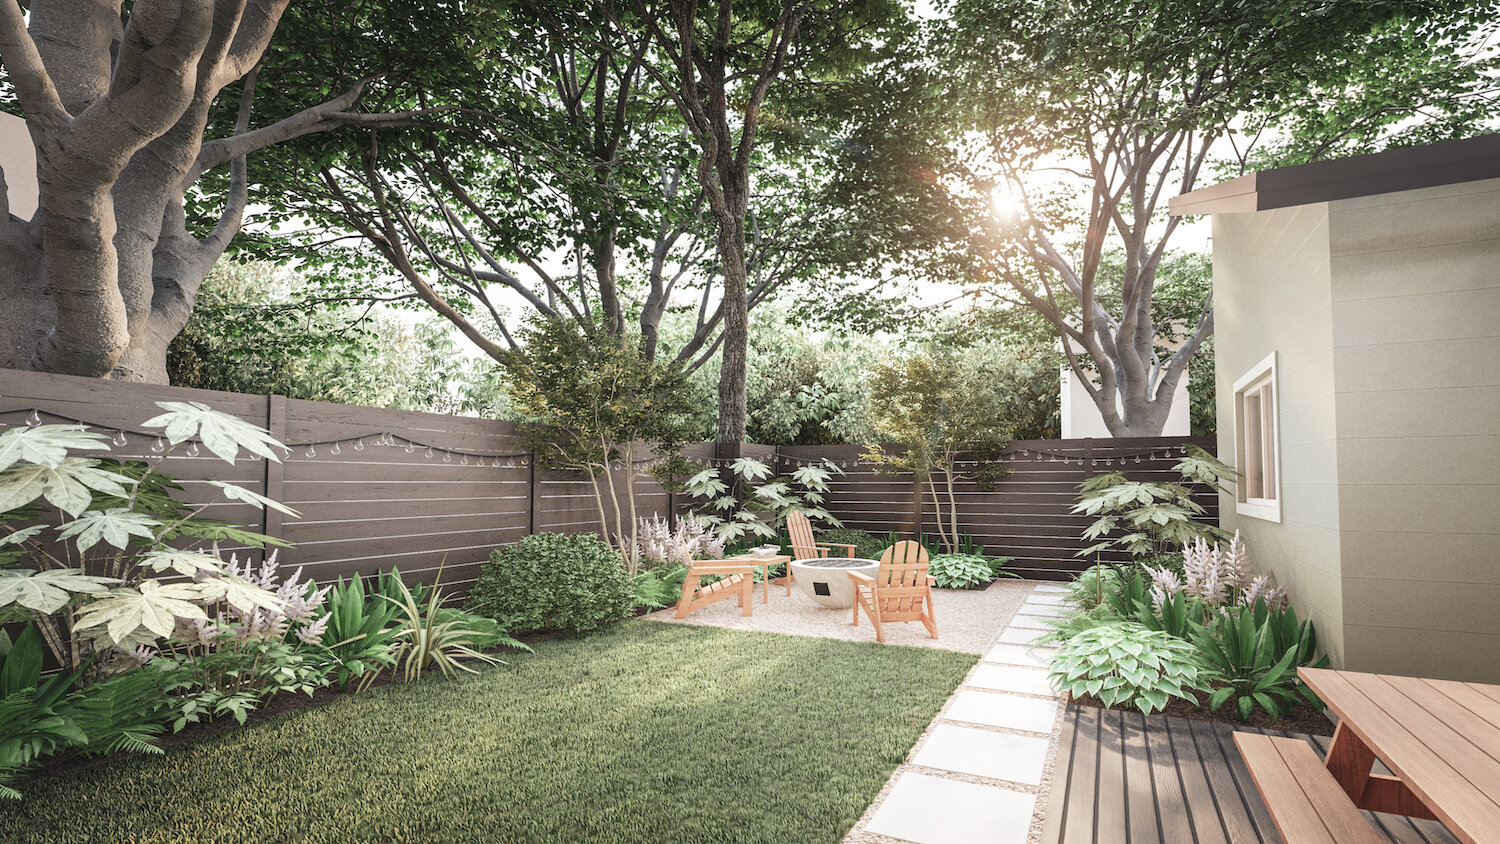 Pacific Northwest Garden Design Ideas Backyard Landscaping Designs